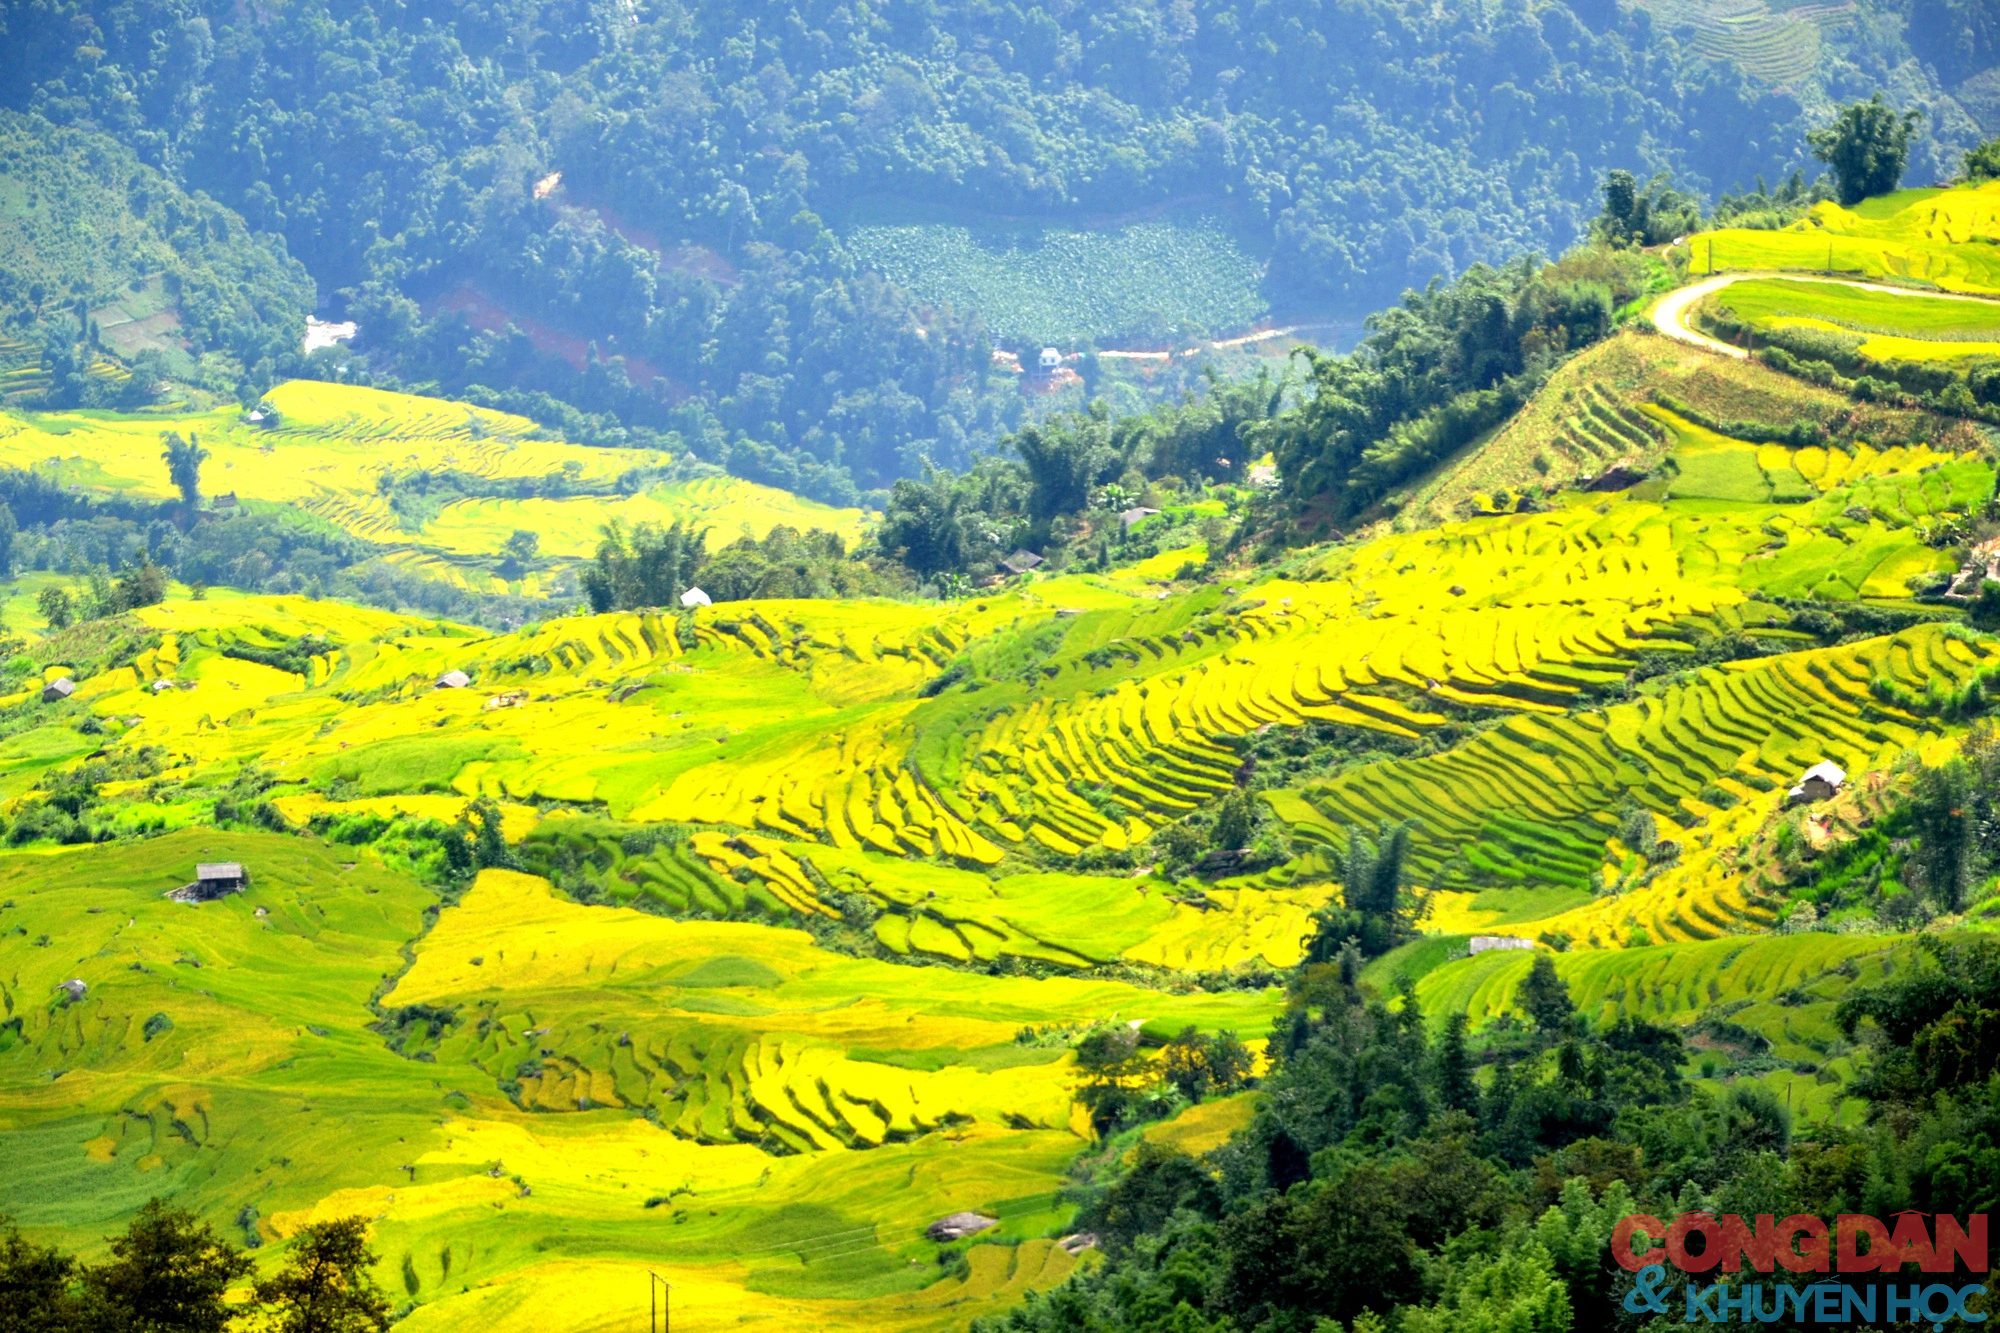 Mùa vàng đẹp mê trên núi cao Bát Xát, Lào Cai - Ảnh 1.